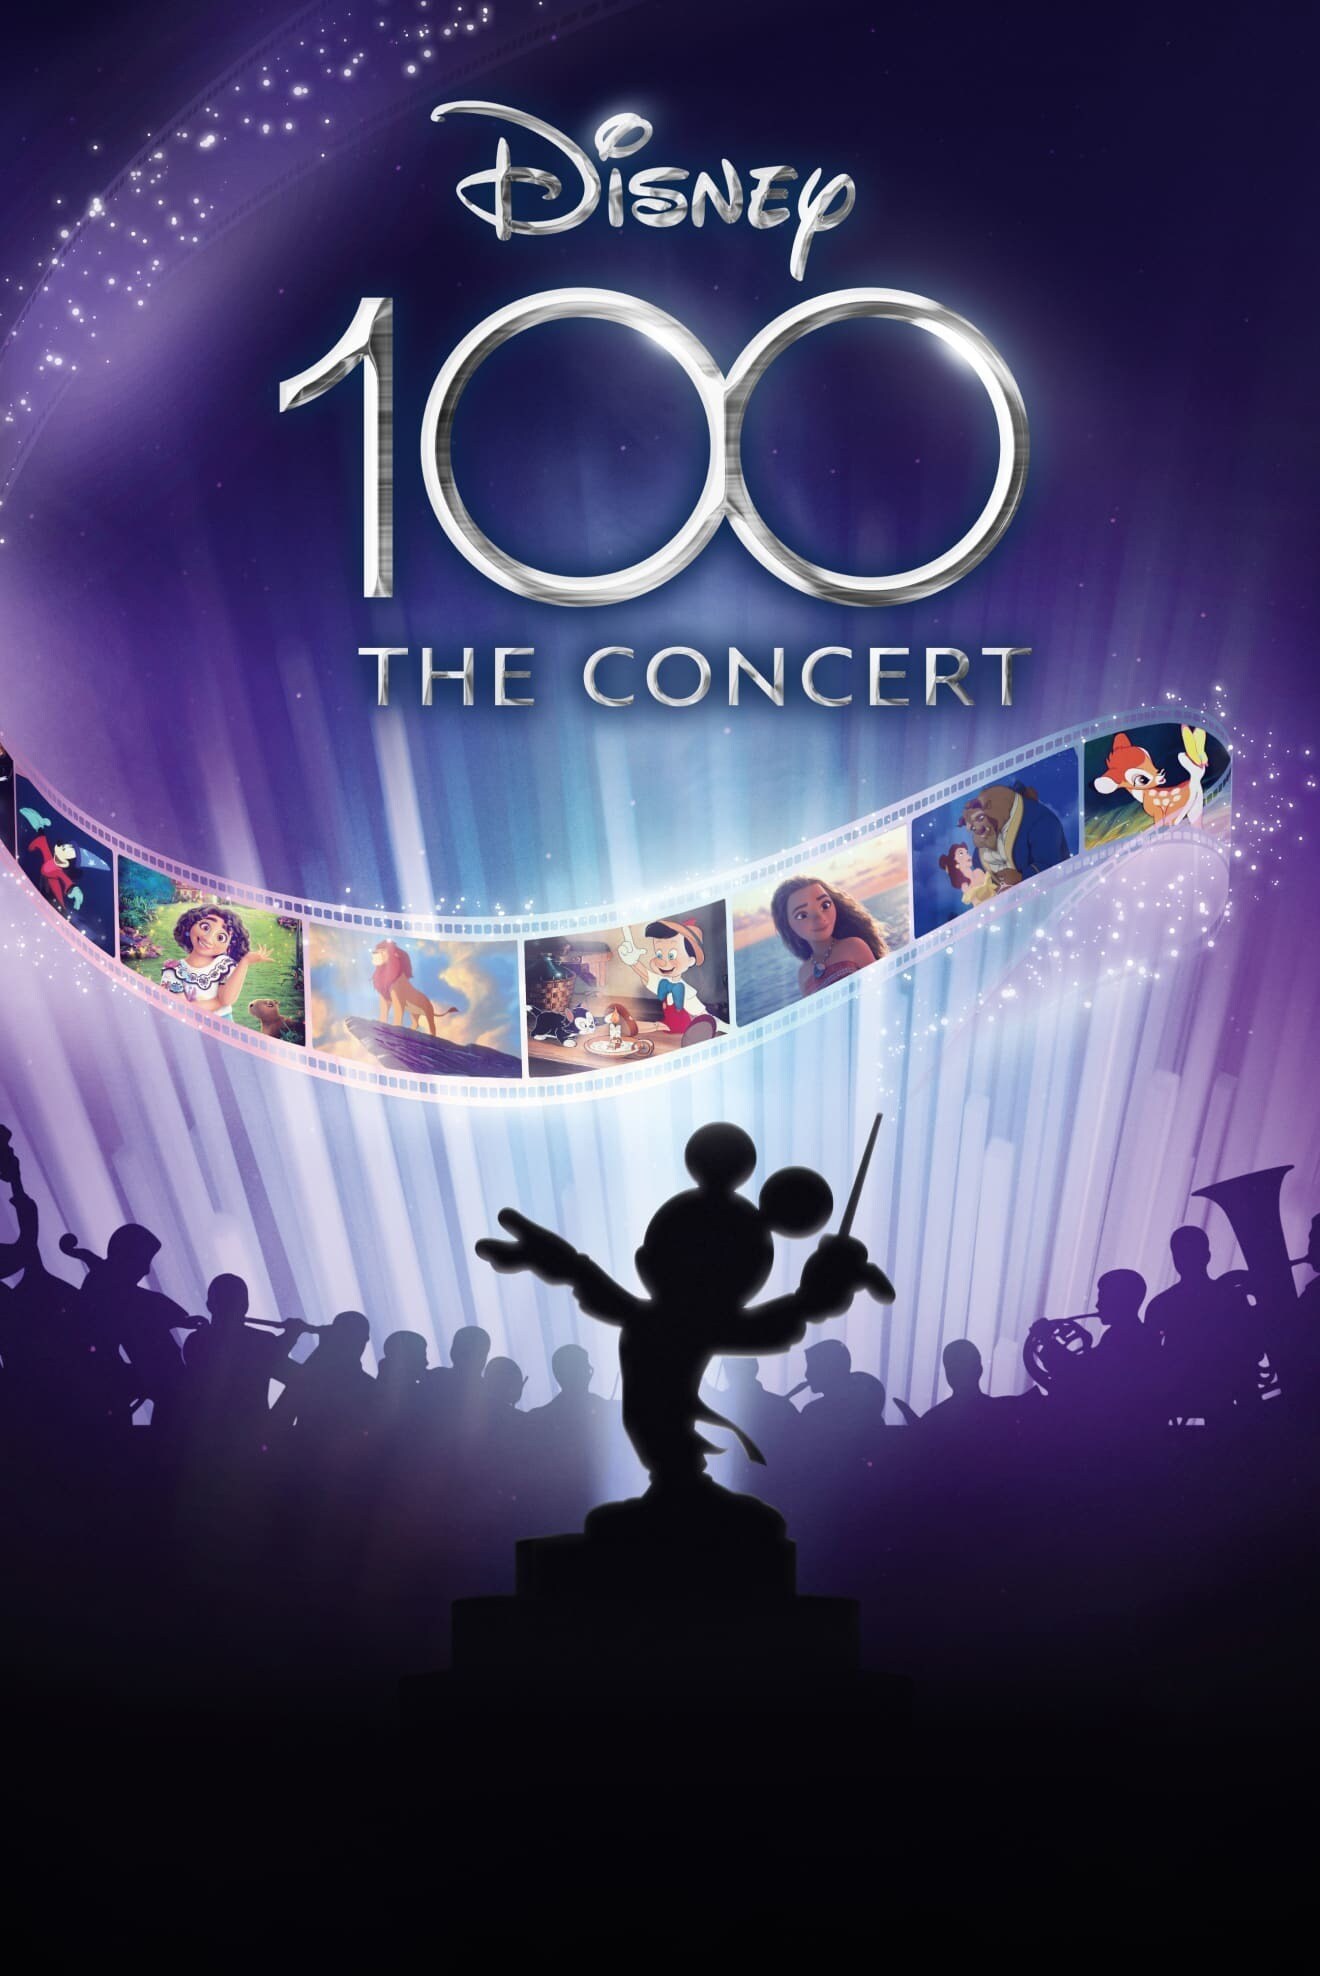 Silhouette von Mickey Maus als Dirigent und Orchester mit dem Schriftzug Disney 100 - The Concert